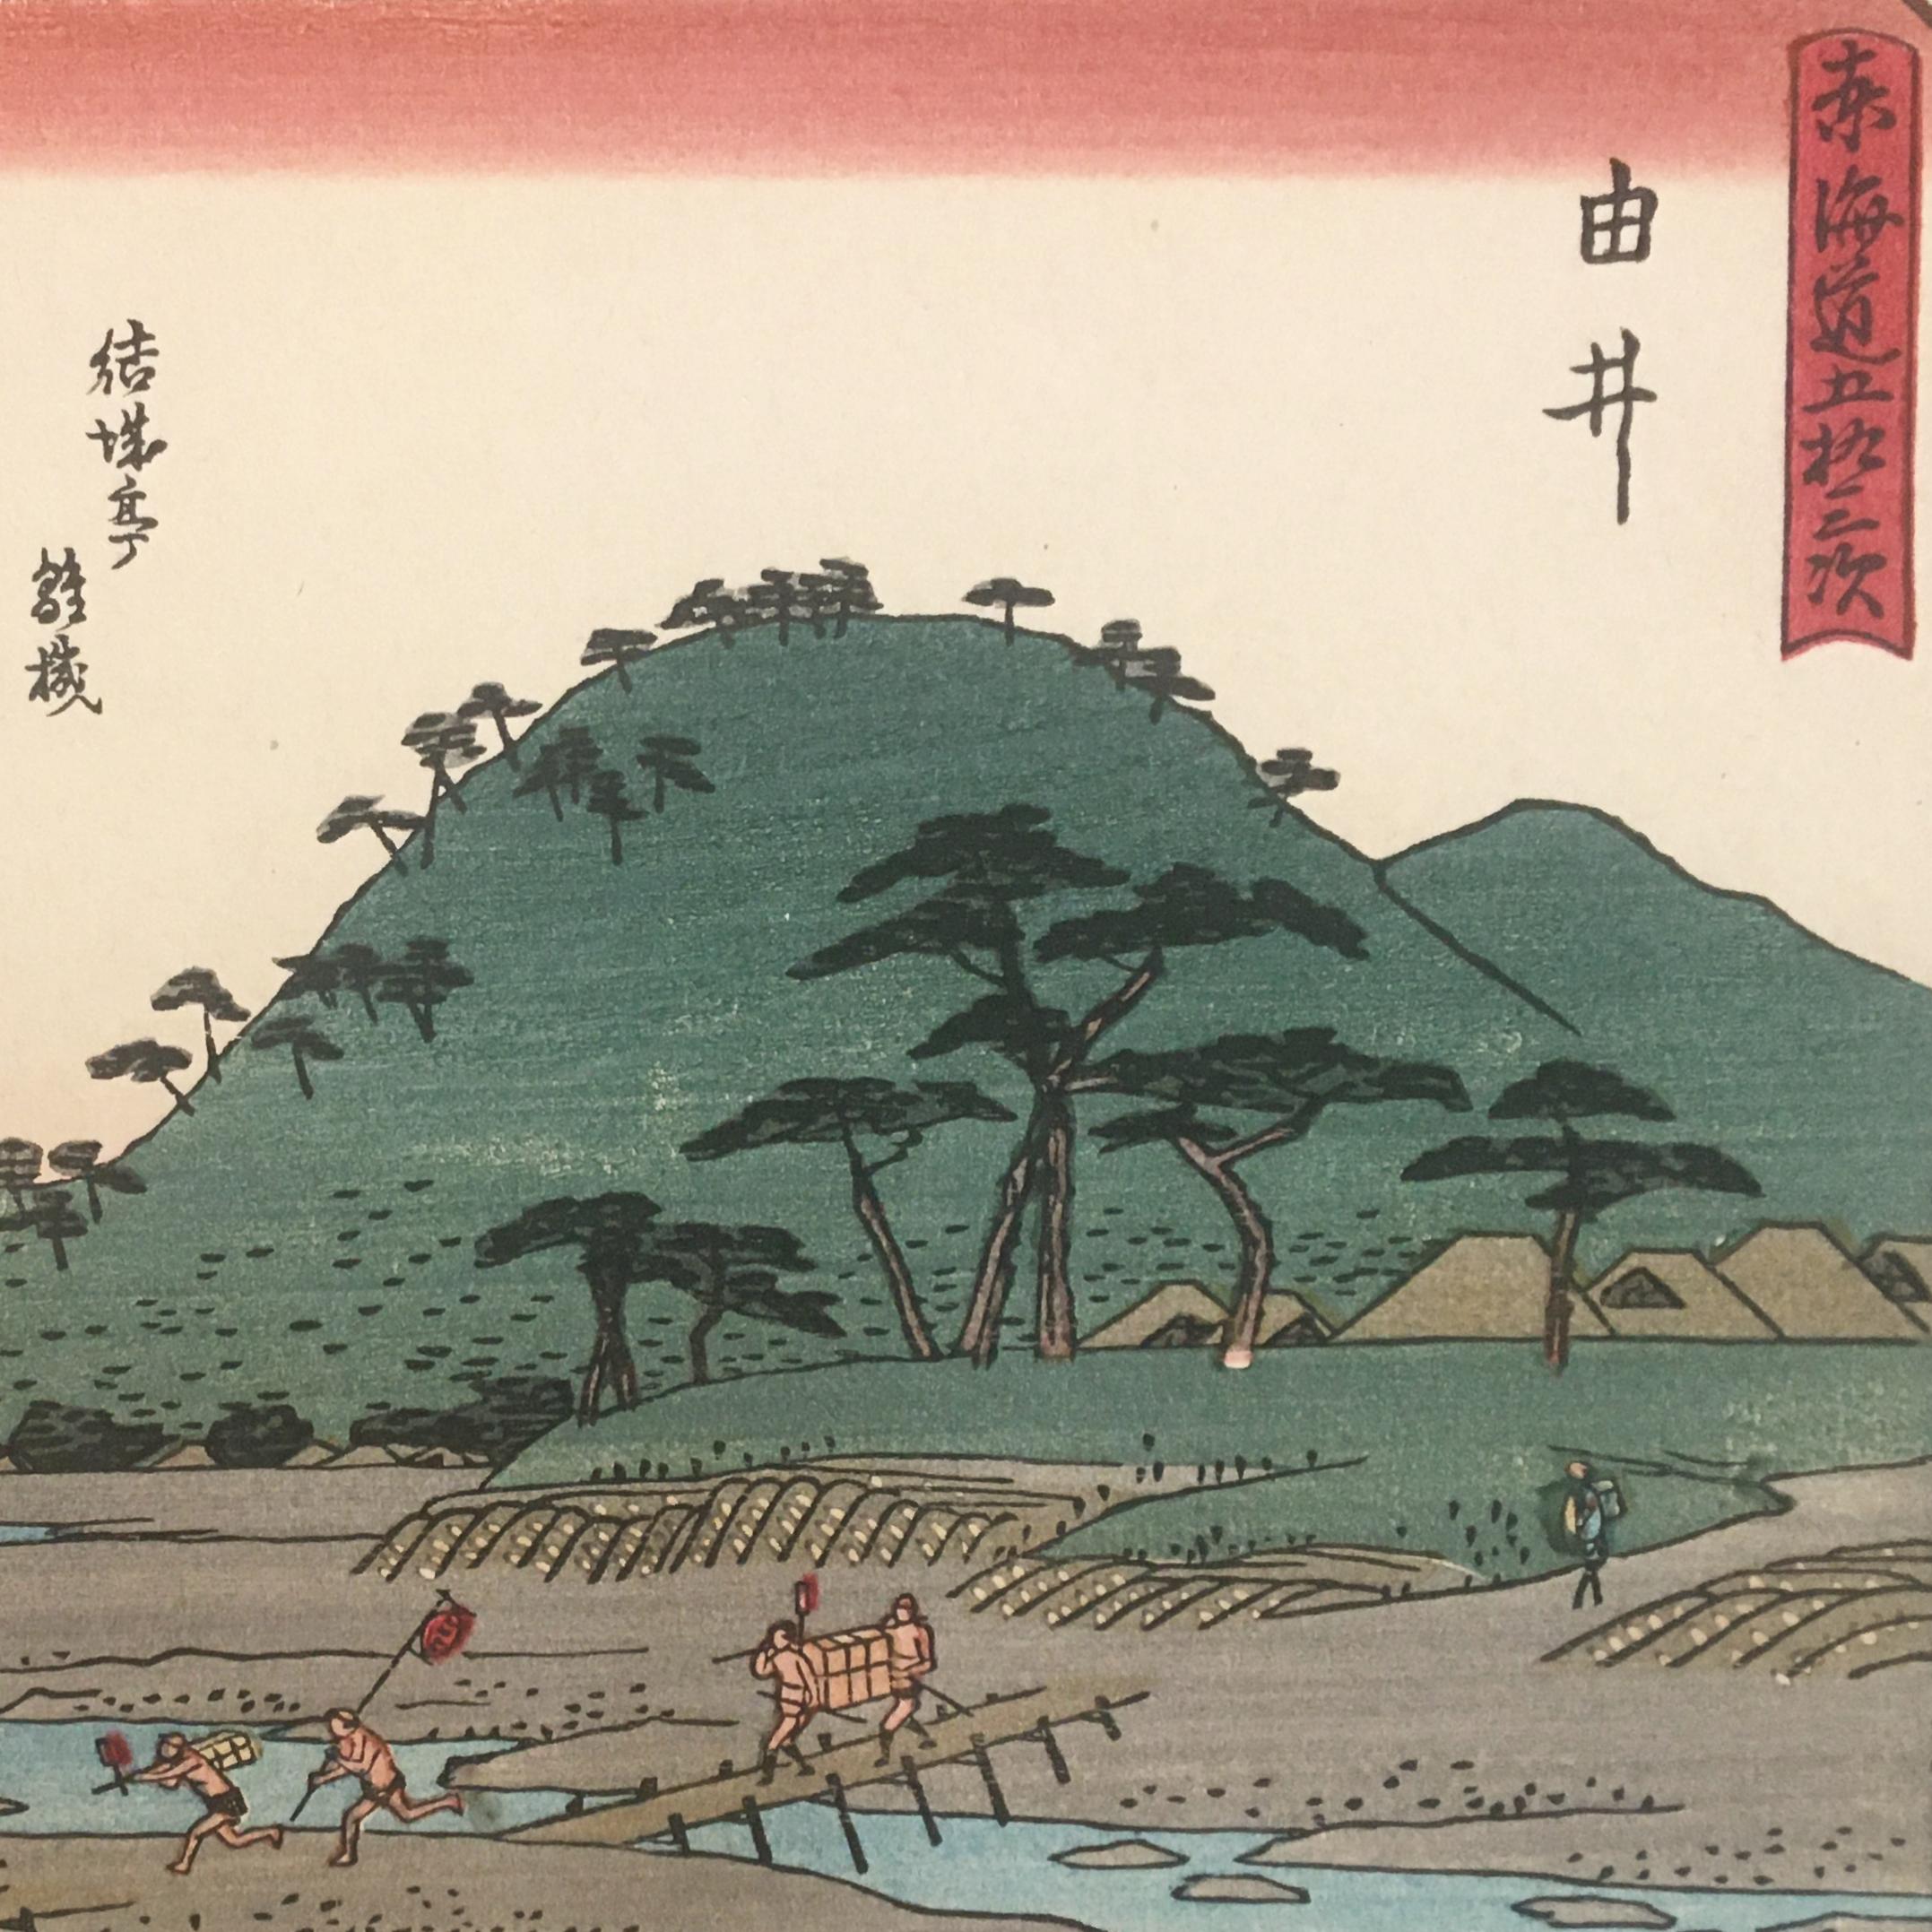 „View of Yui“, nach Utagawa Hiroshige, Ukiyo-E-Holzschnitt, Tokaido, Edo – Print von Utagawa Hiroshige (Ando Hiroshige)